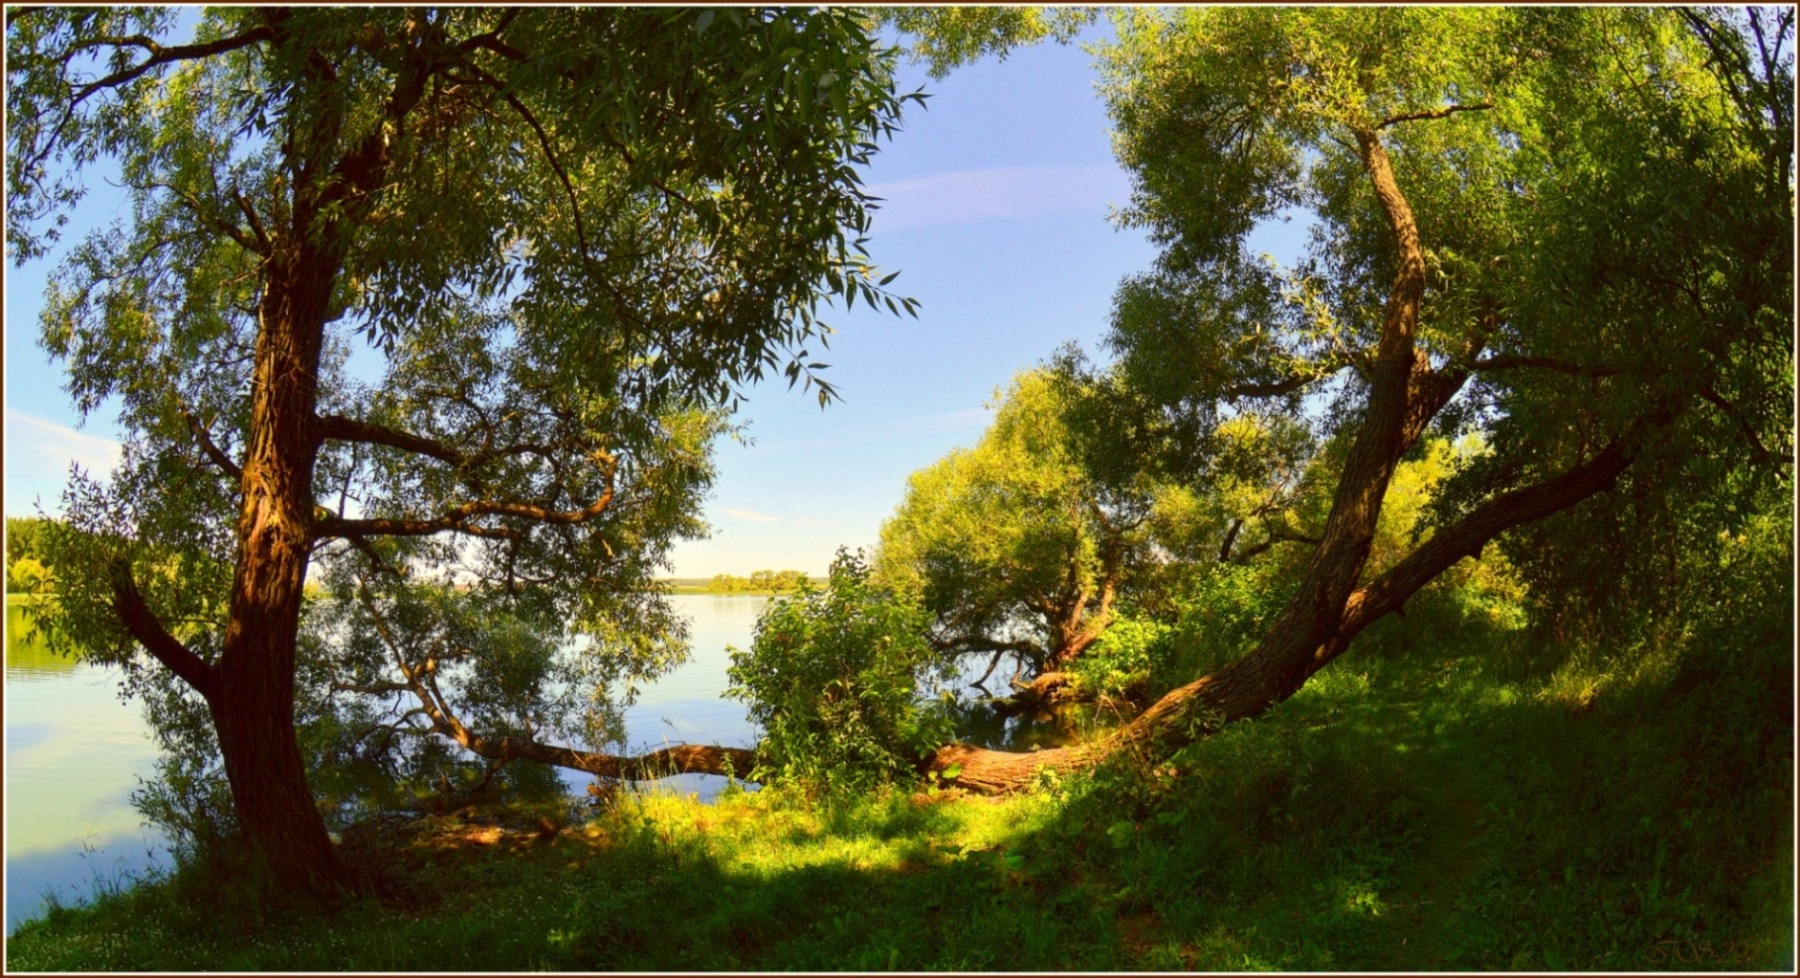 деревья у берега | Фотограф Игорь Сафонов | foto.by фото.бай